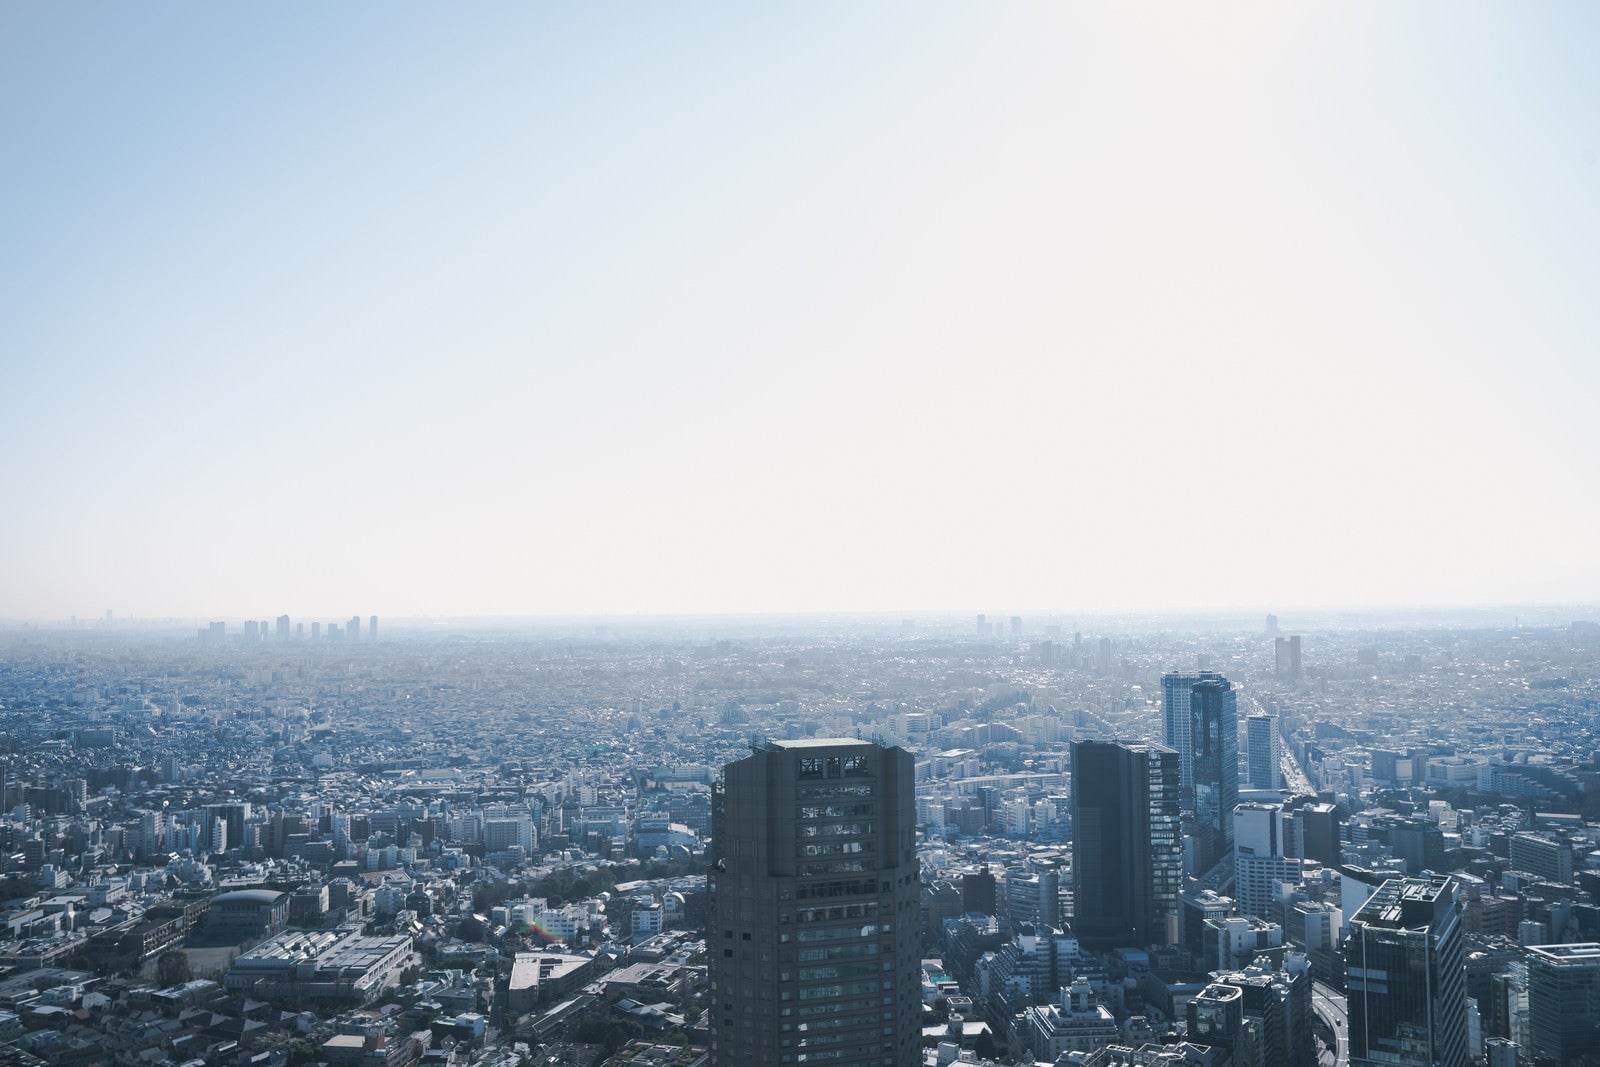 「渋谷スクランブルスクエアから望む街並み」の写真